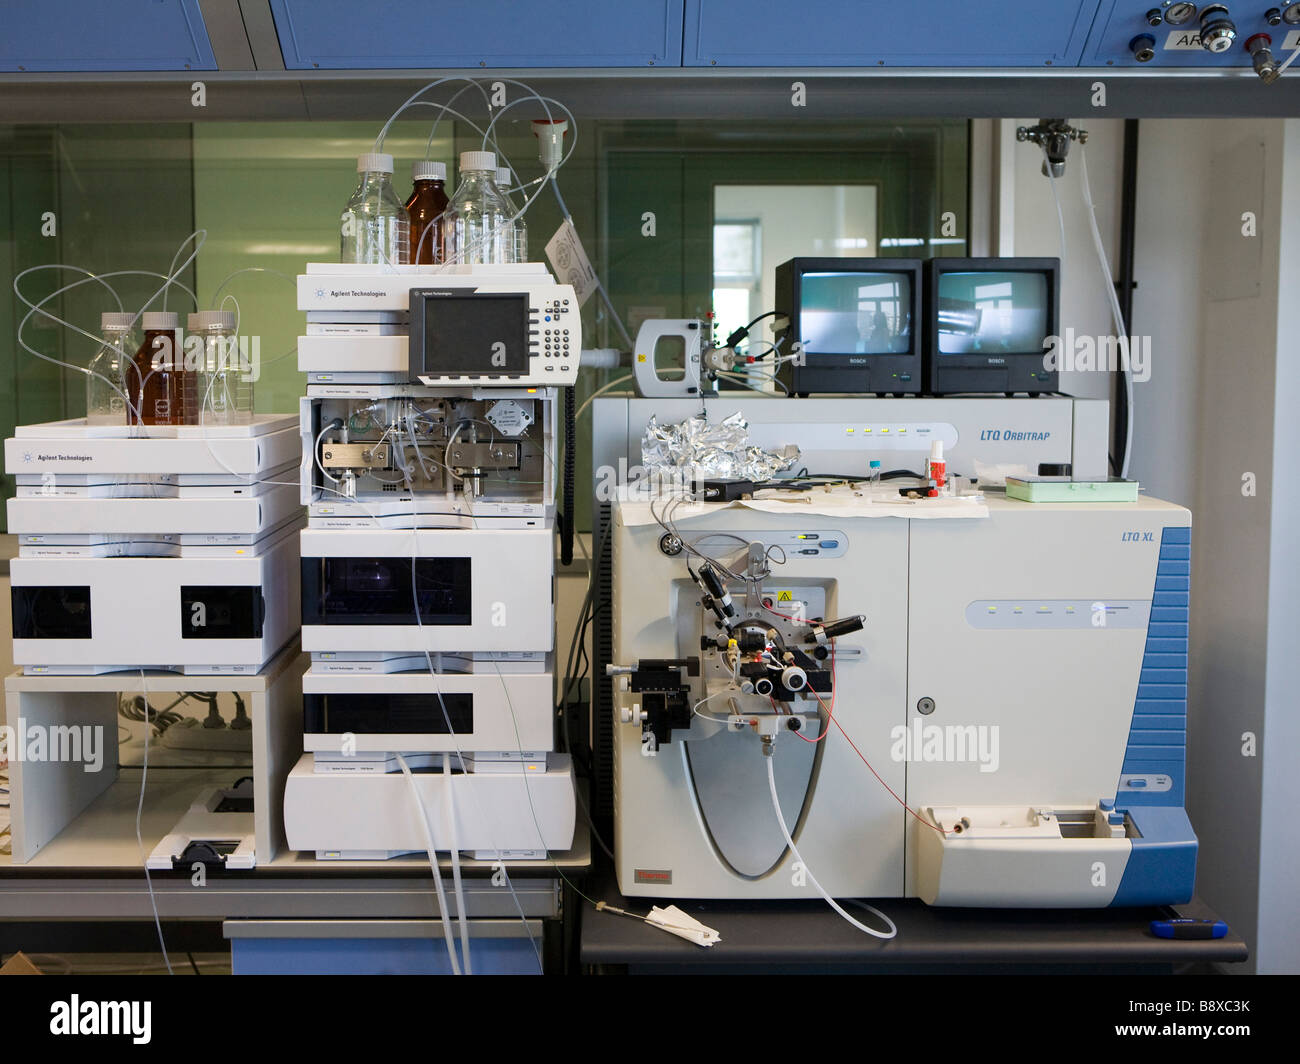 Hplc et un spectromètre de masse, Istituto di Ricerche farmacologiche Mario Negri, Milan, Italie Banque D'Images